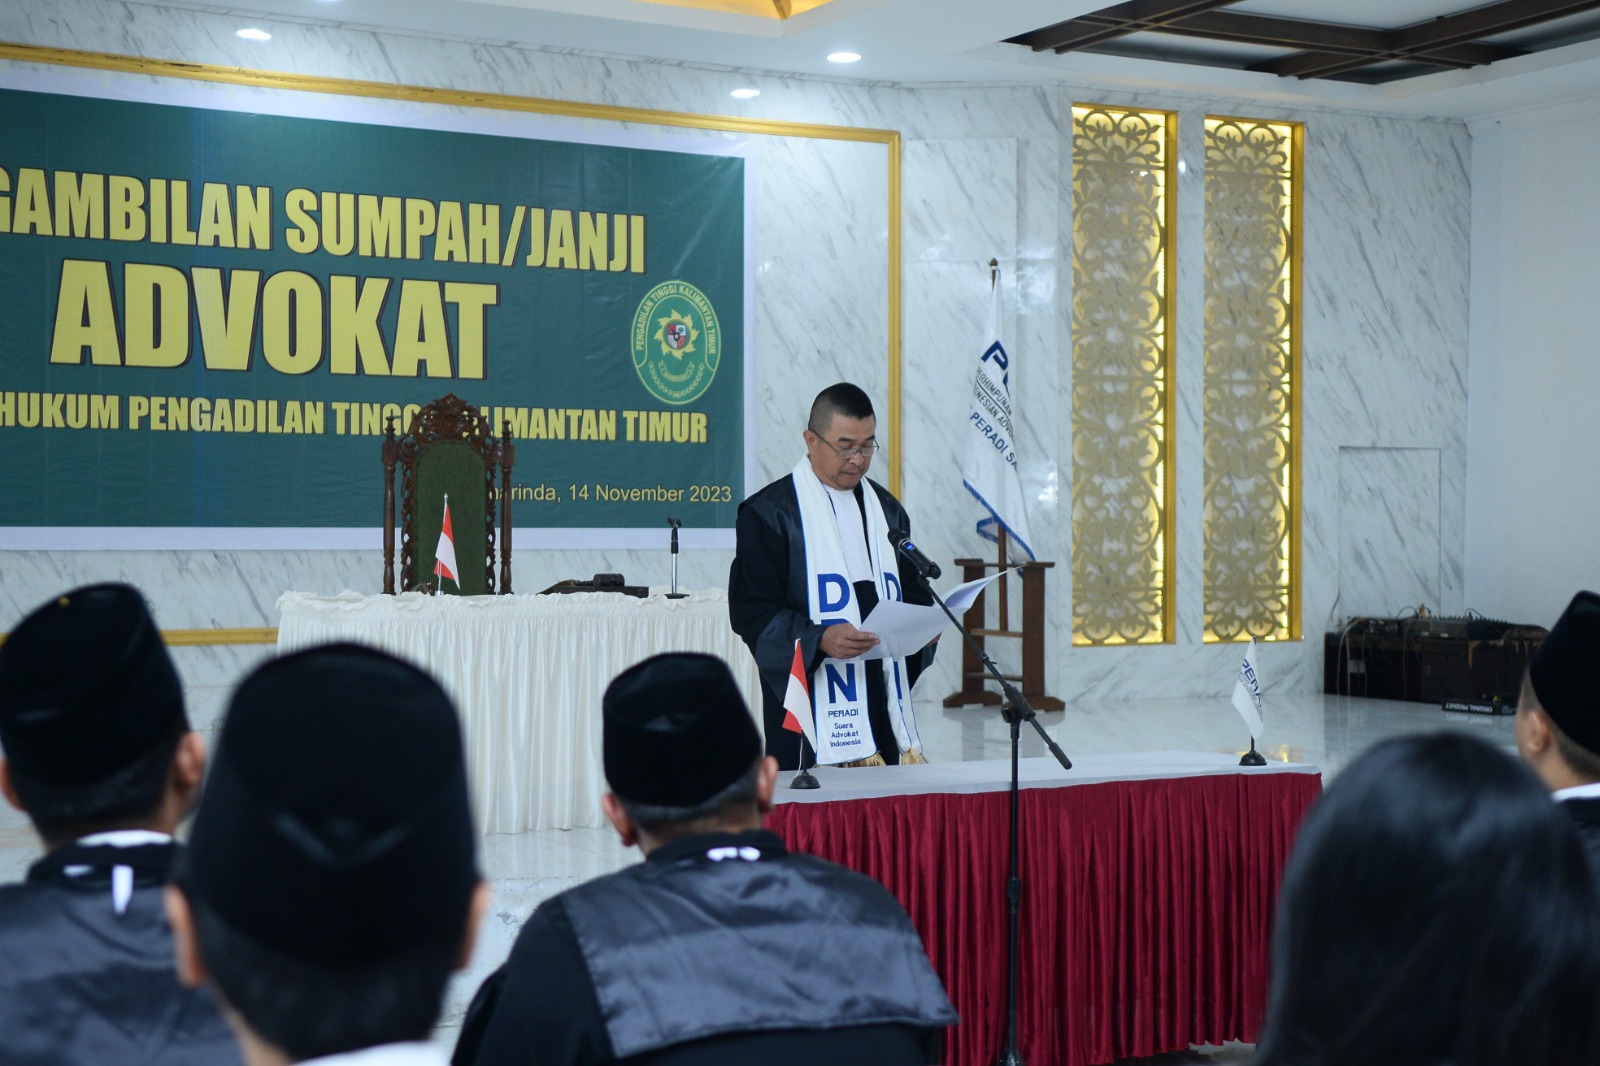 DPC PERADI SAI Samarinda telah melaksanakan Pengambilan Sumpah Advokat Se-Wilayah Hukum Pengadilan Tinggi Kalimantan Timur, pada tanggal 14 November 2023, dengan jumlah peserta sebanyak 53 orang.